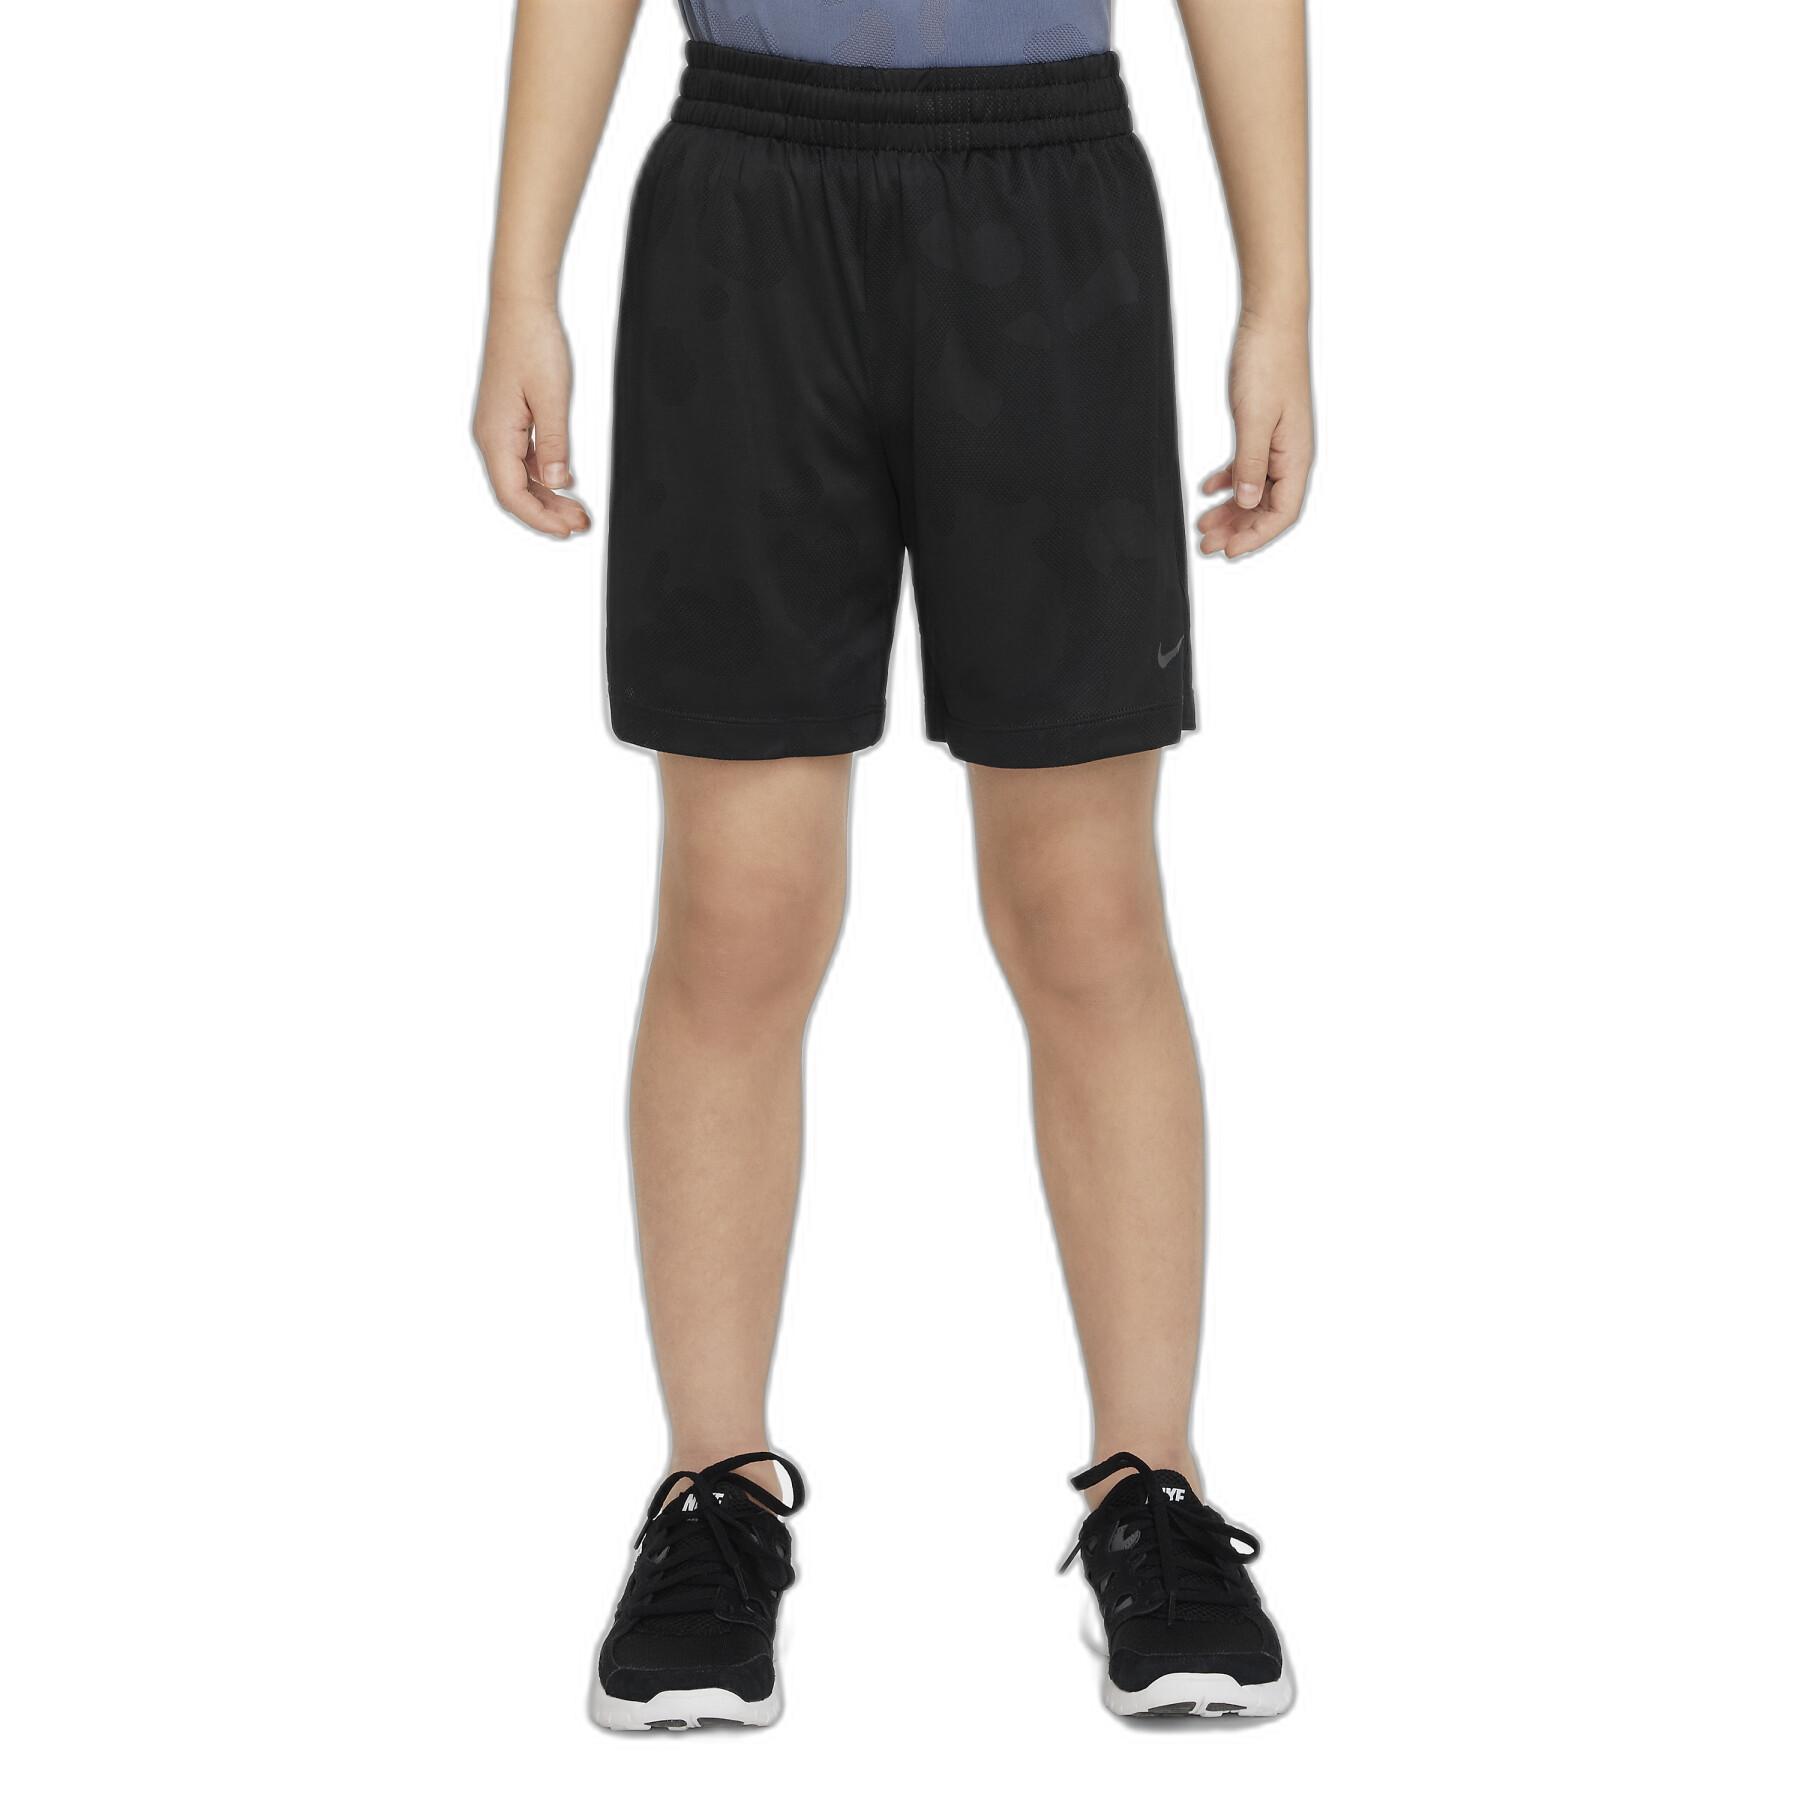 Pantalones cortos para niños Nike Dri-FIT Multi + Gear Dwn